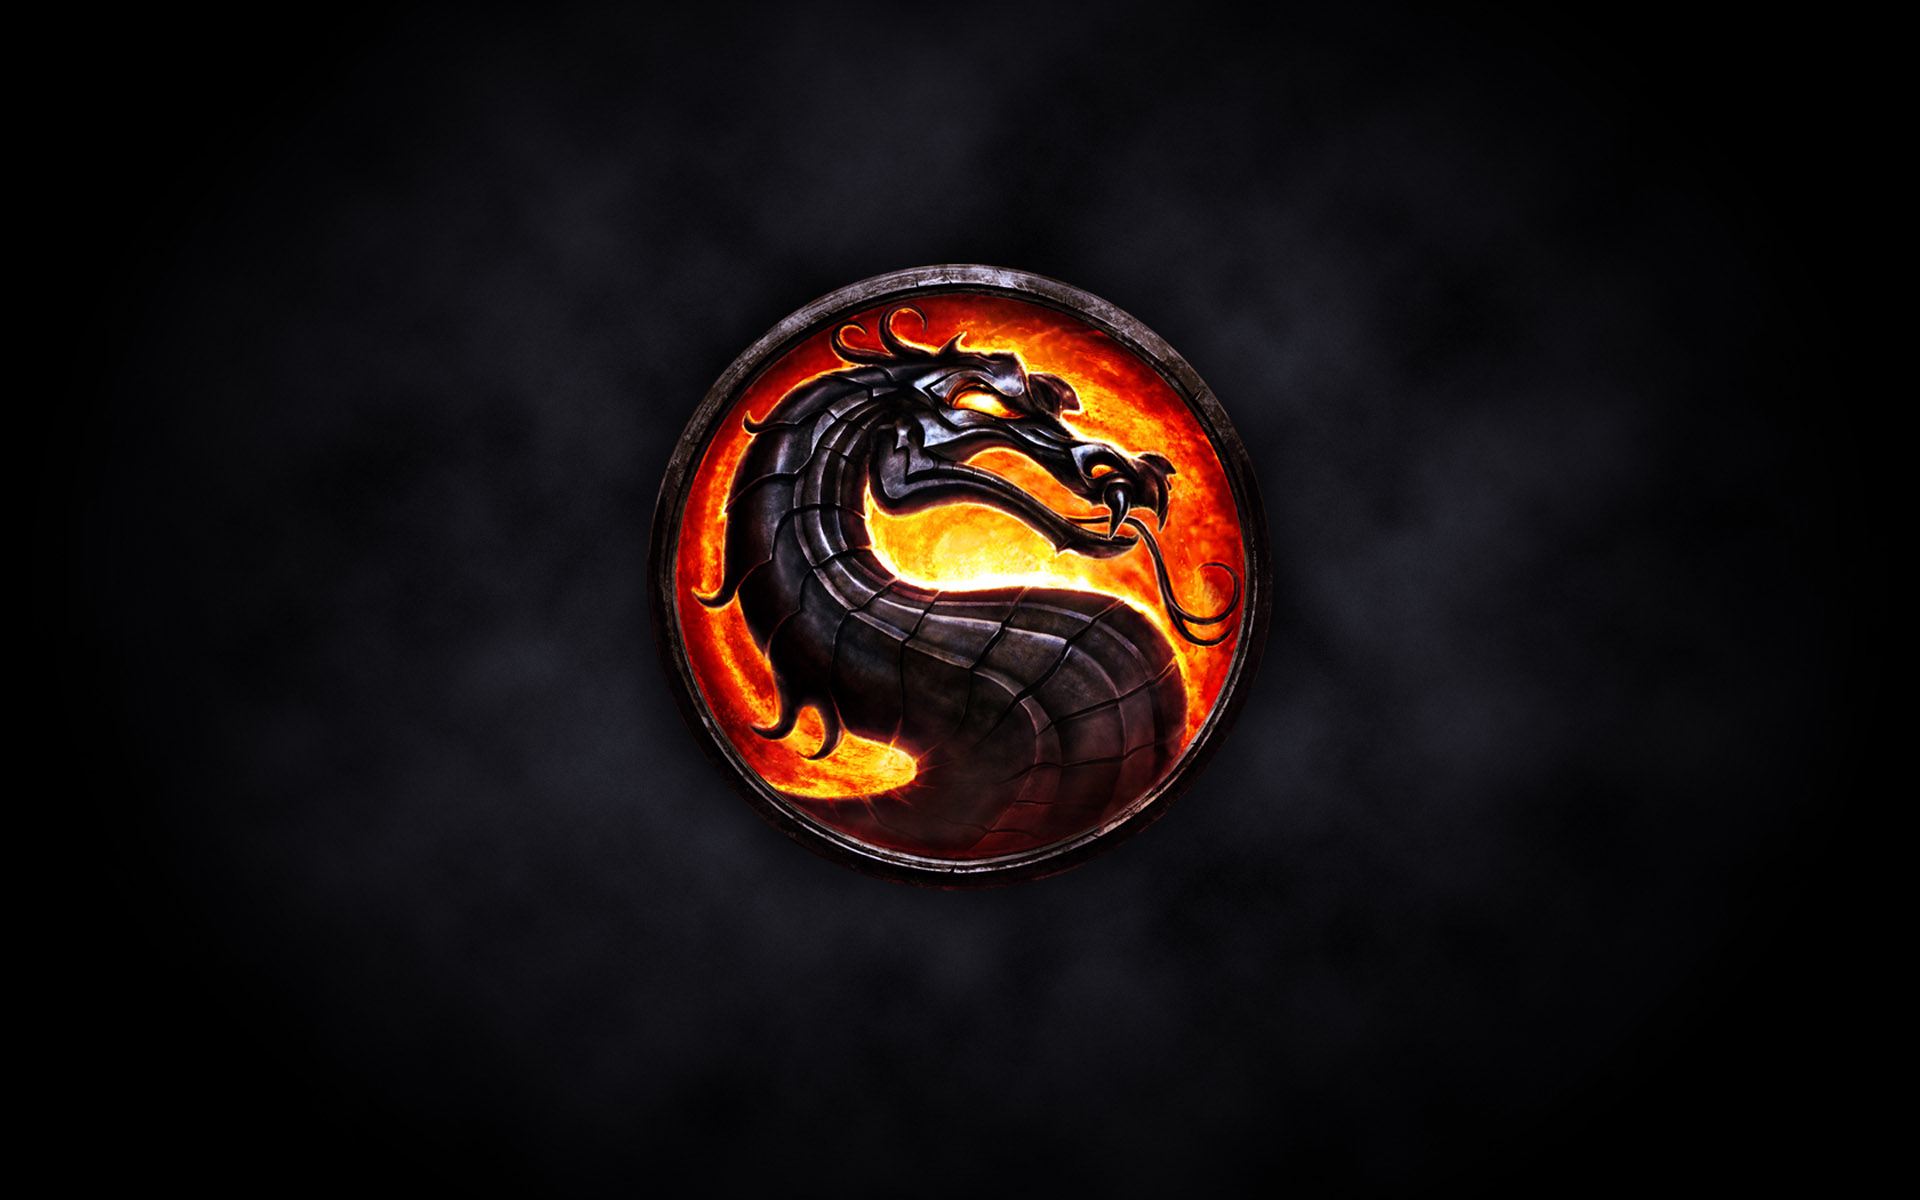 76+] Mortal Kombat Backgrounds - WallpaperSafari